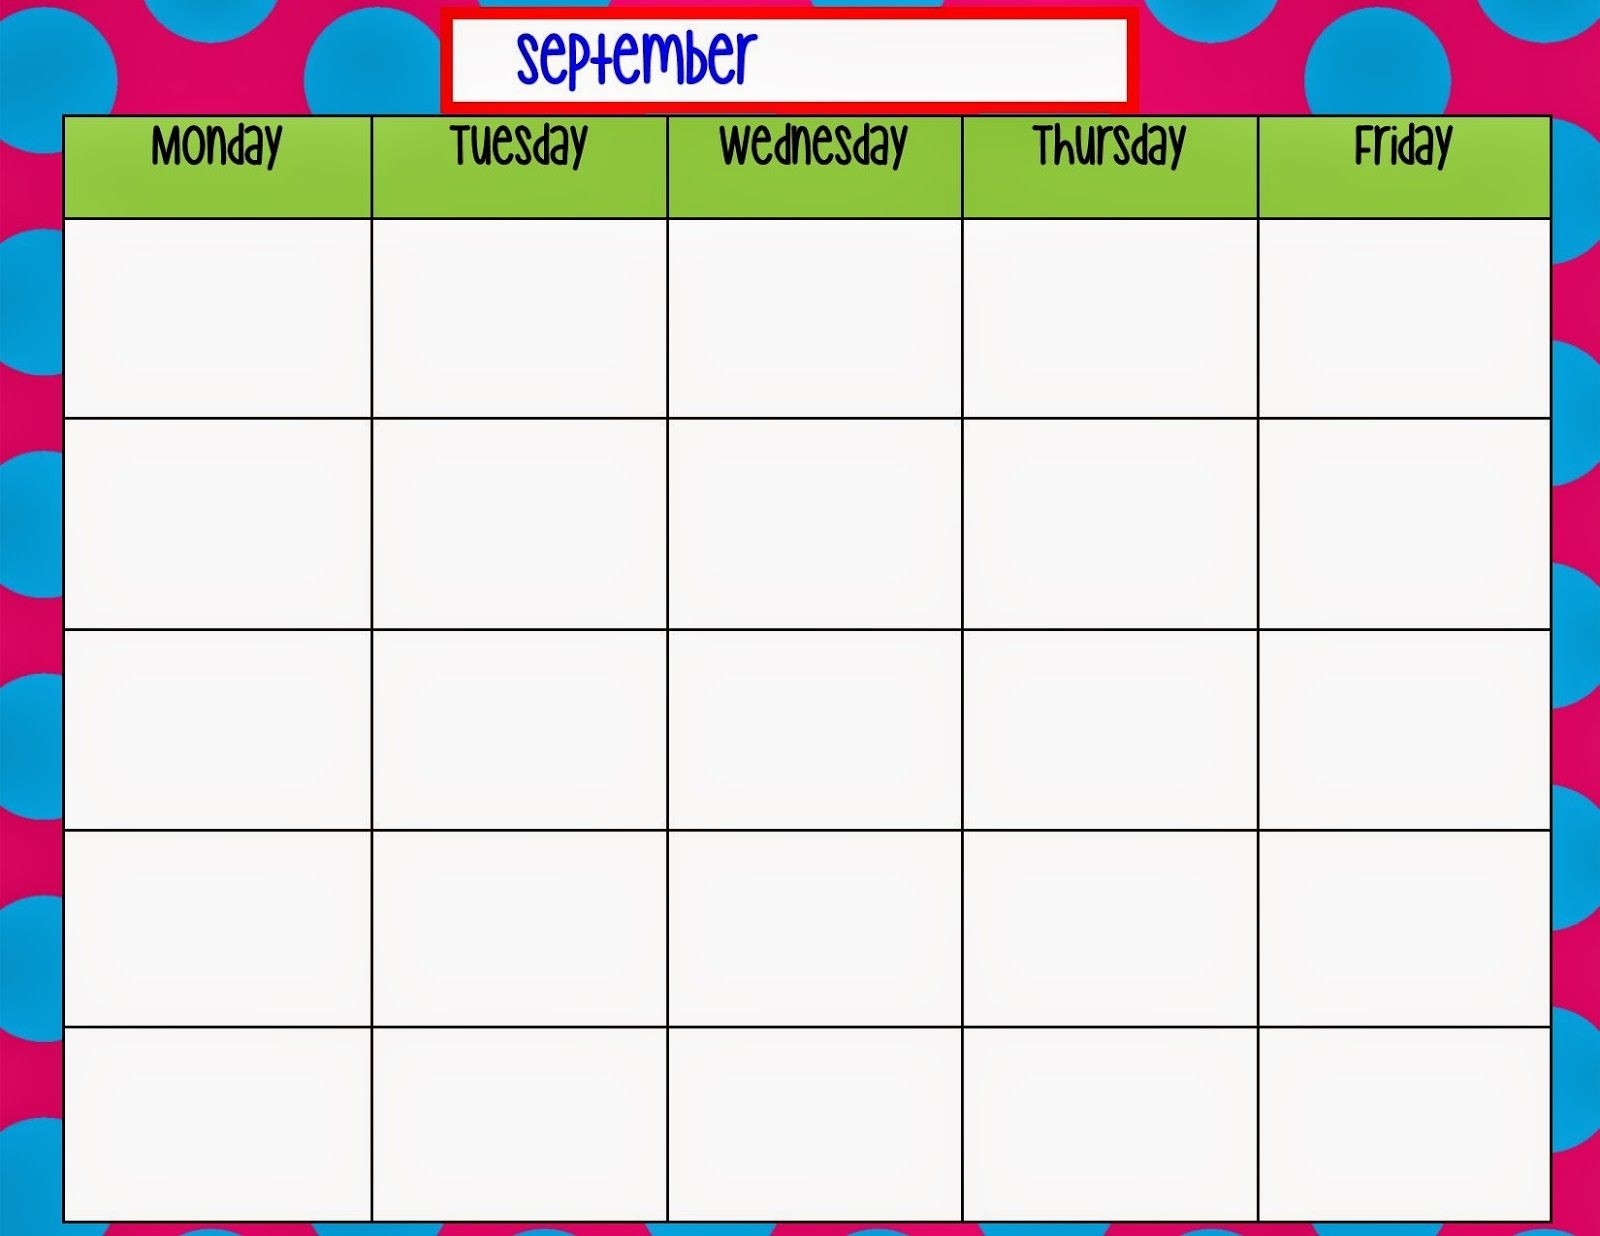 Monday Through Friday Calendar Template | Preschool | Weekly-Monday Friday Monthly Calendar Template